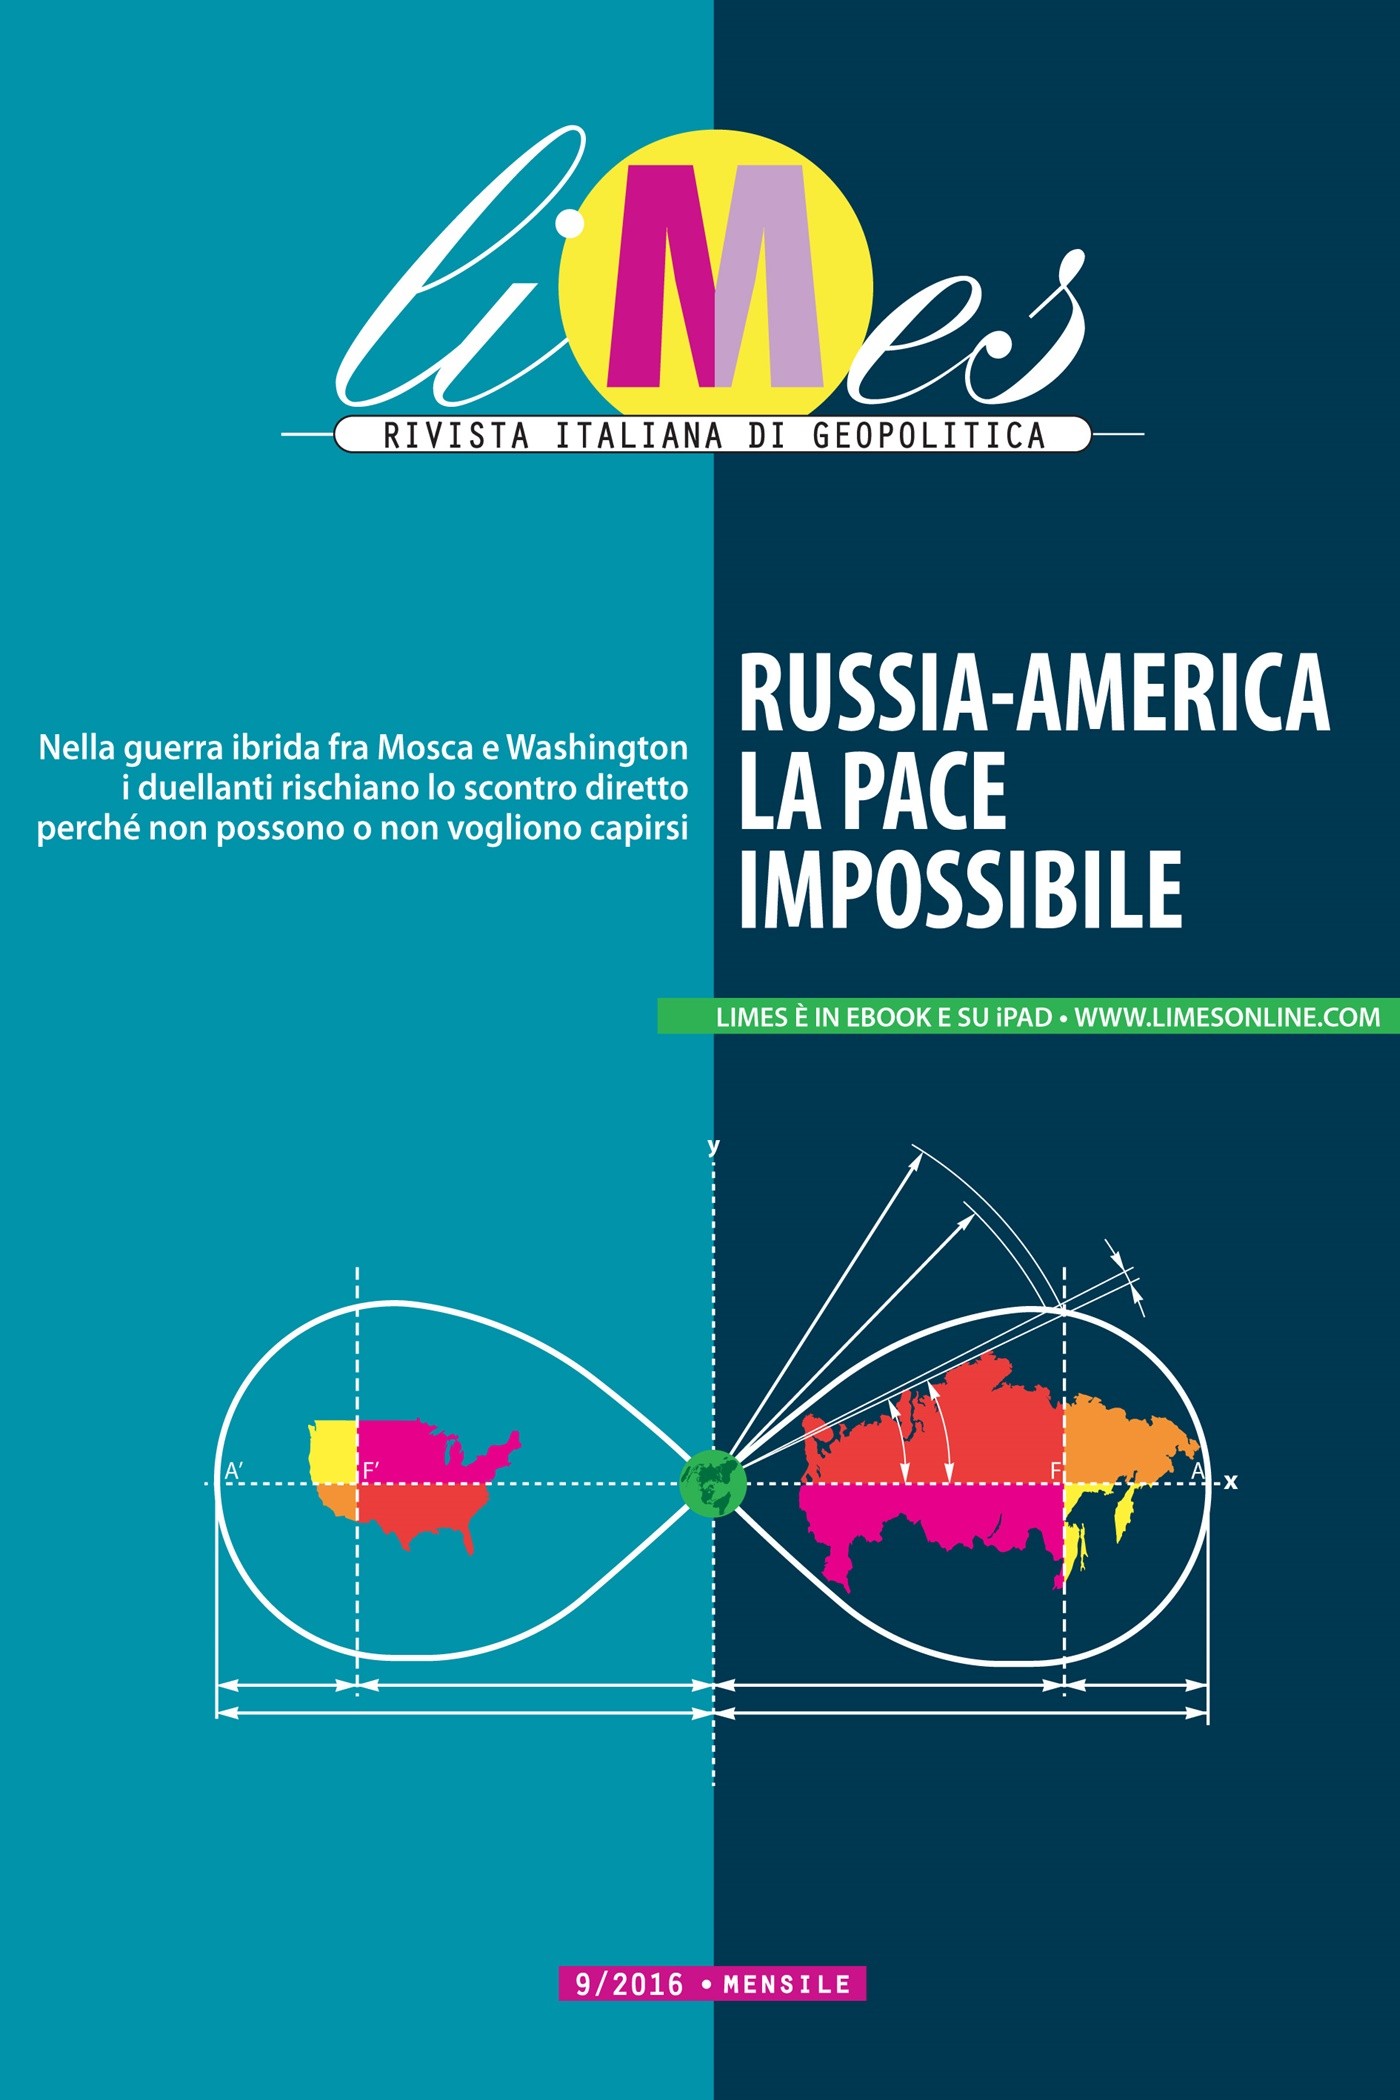 Limes - Russia-America, la pace impossibile - Librerie.coop